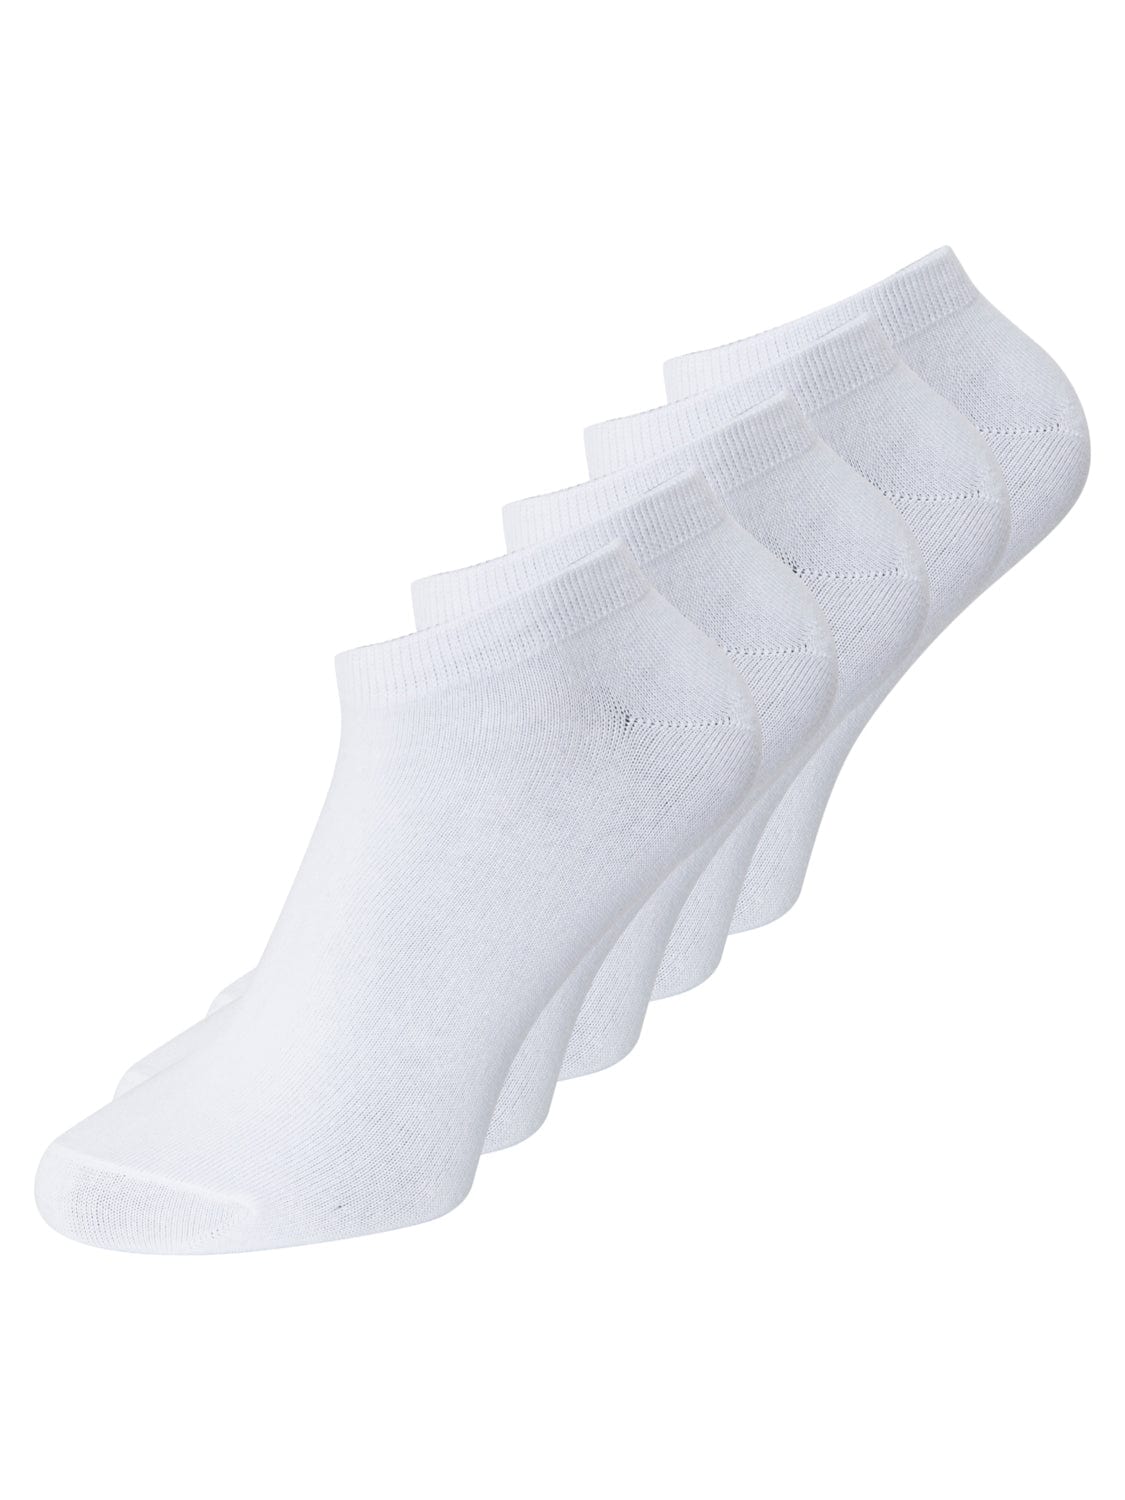 Calcetines cortos 5 pares Blancos - DONGO